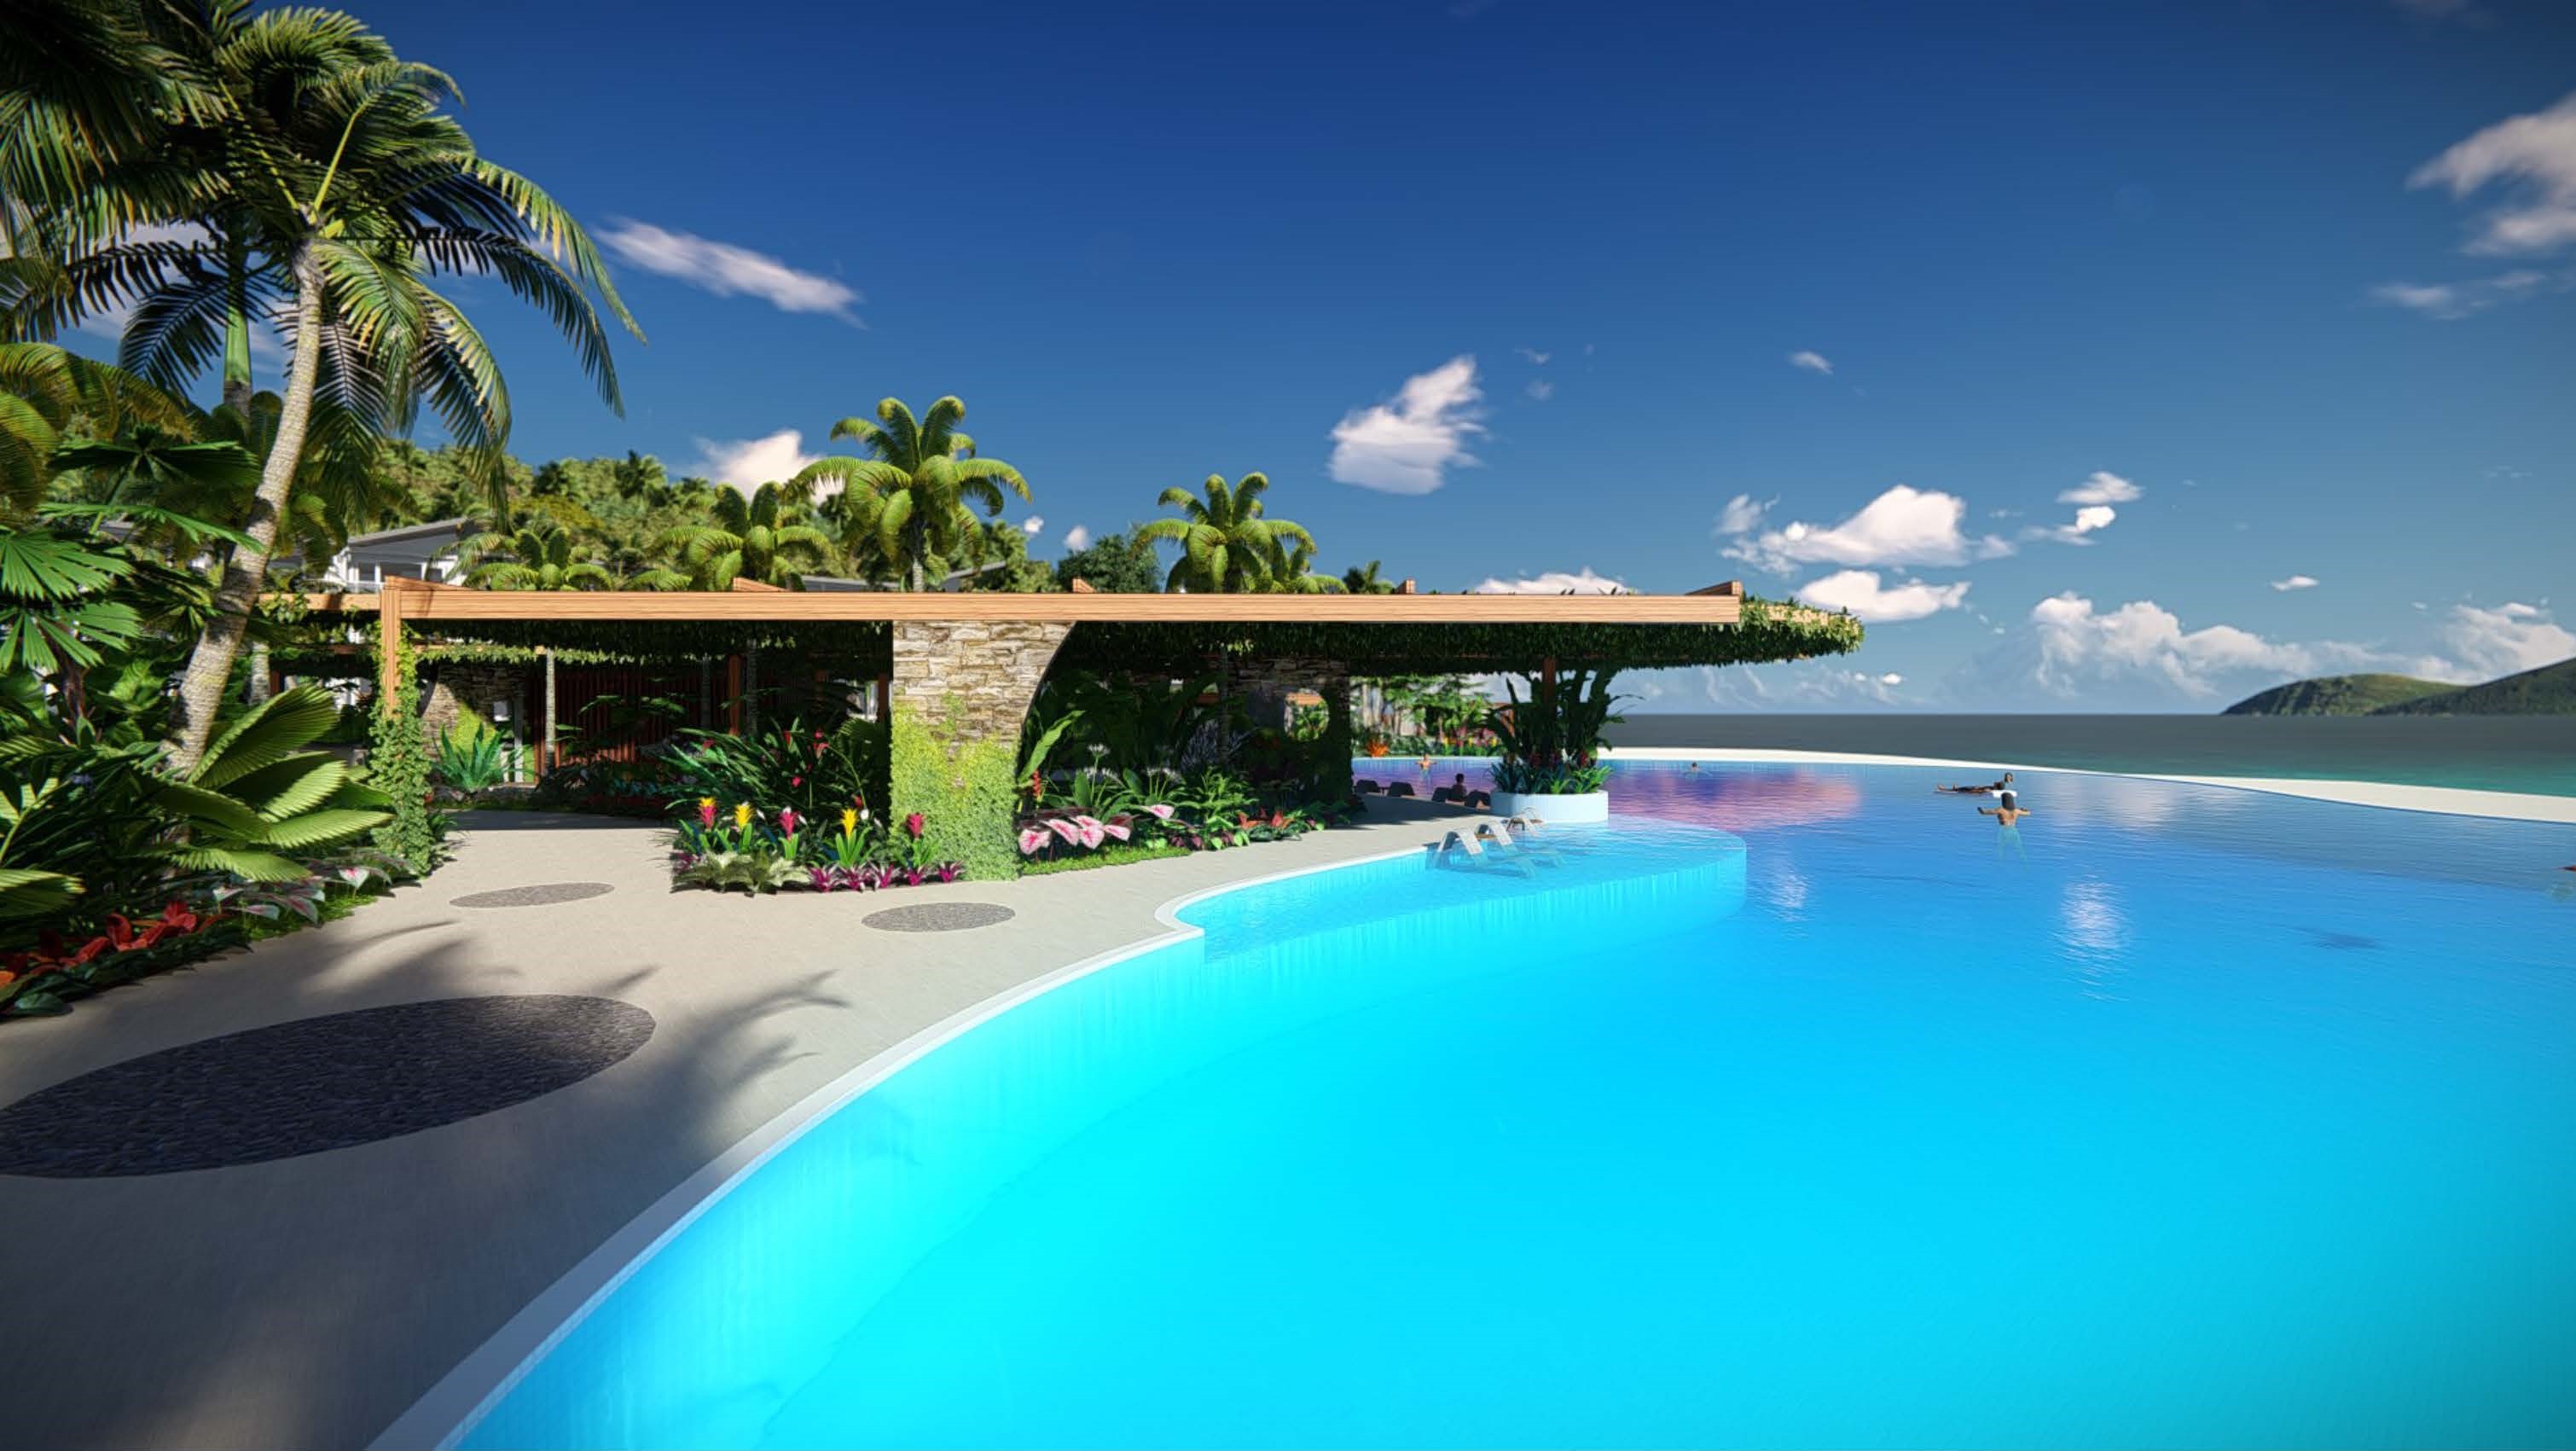 Daydream Island CGI Pool Concept 4